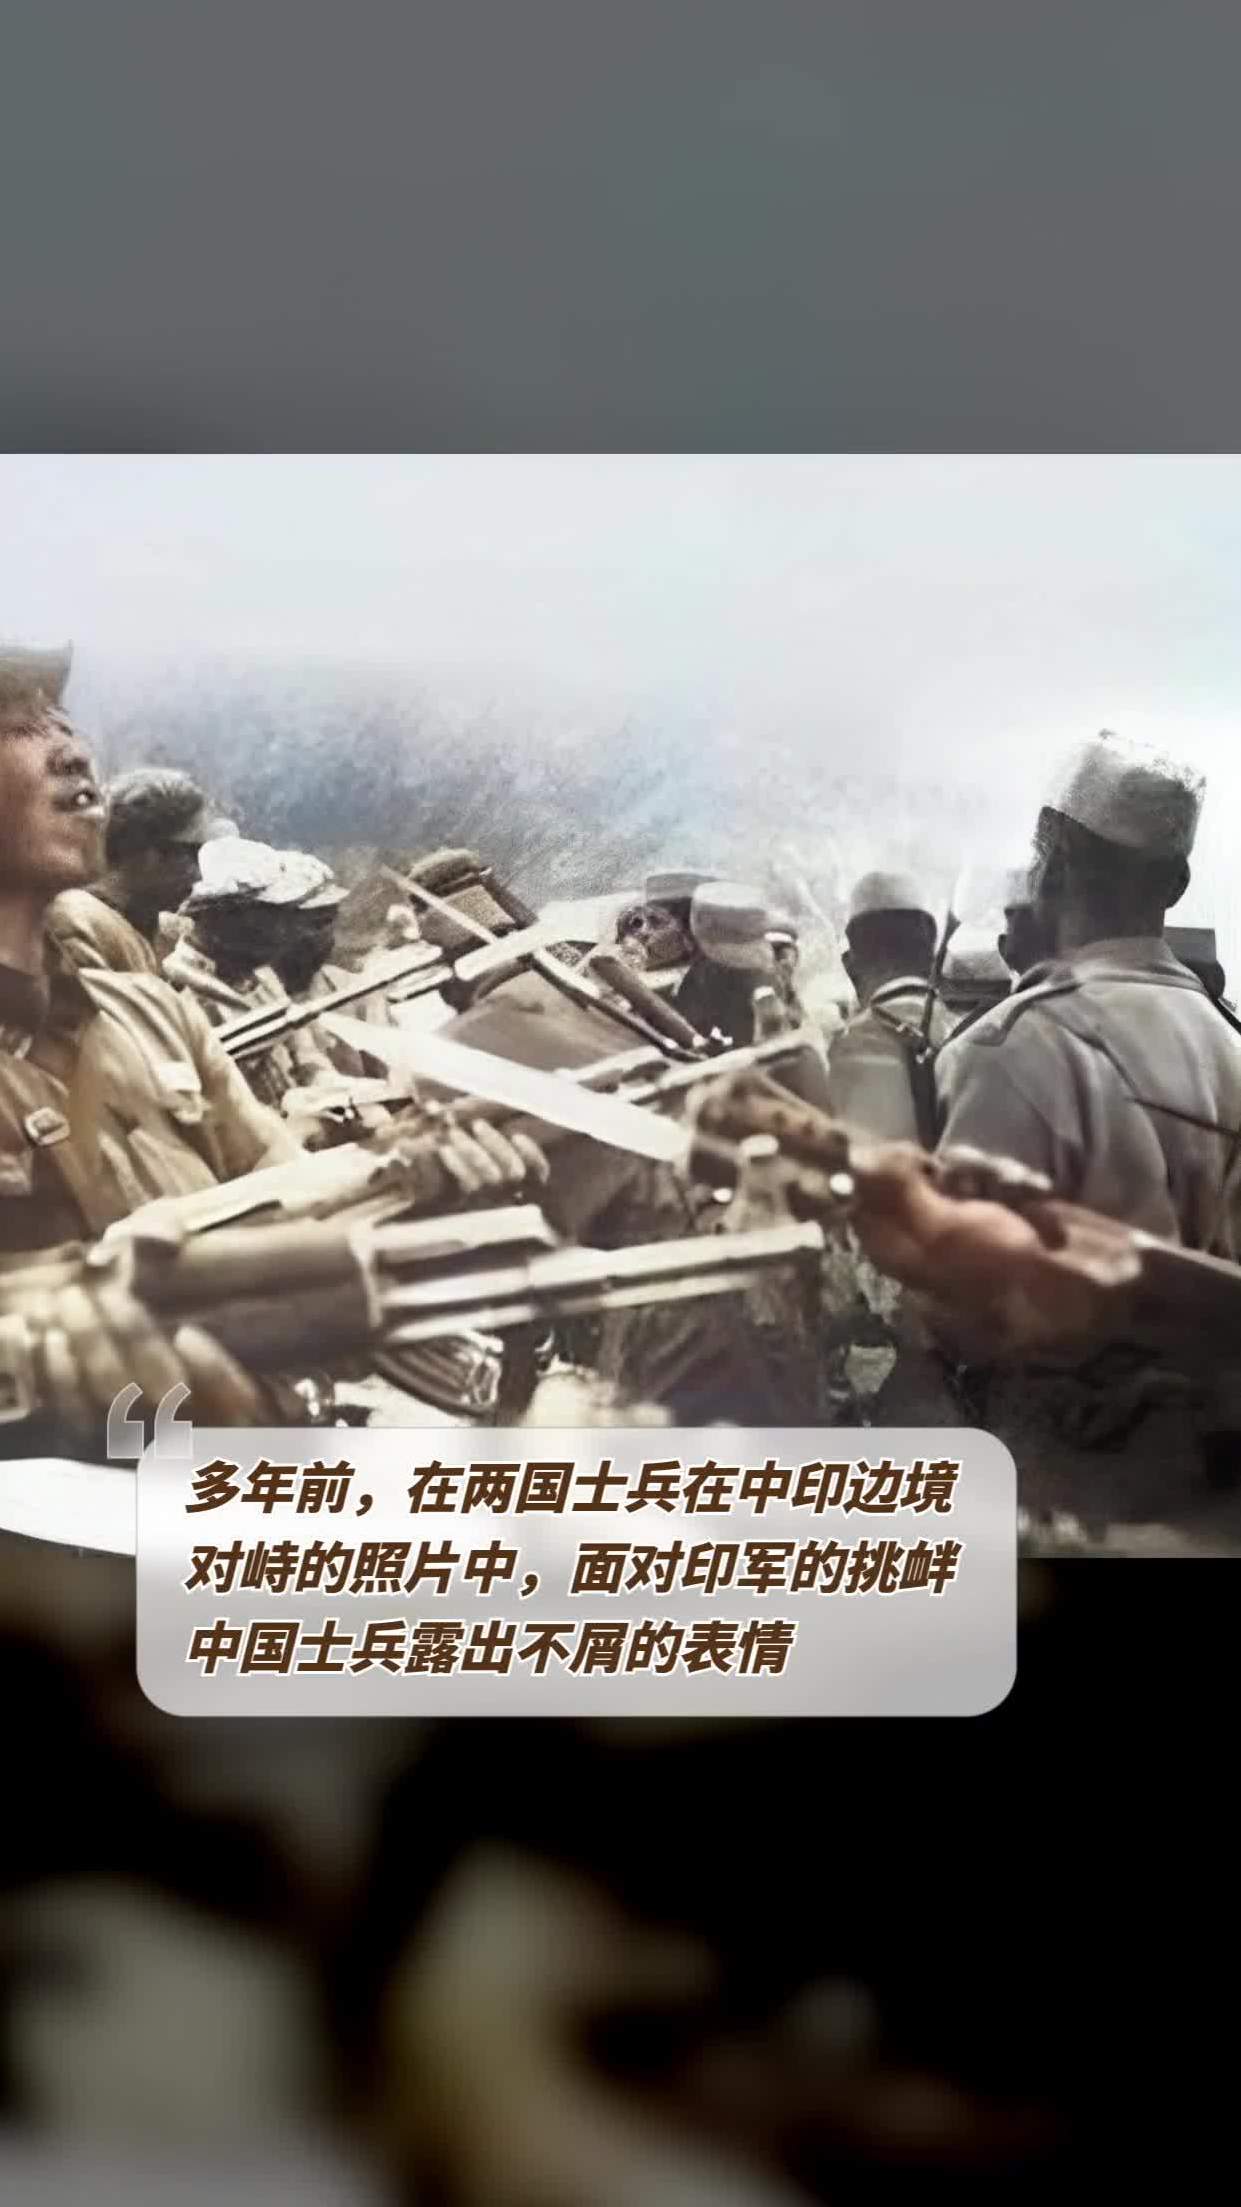 多年前,在两国士兵在中印边境对峙的照片中,面对印军的挑衅,中国士兵